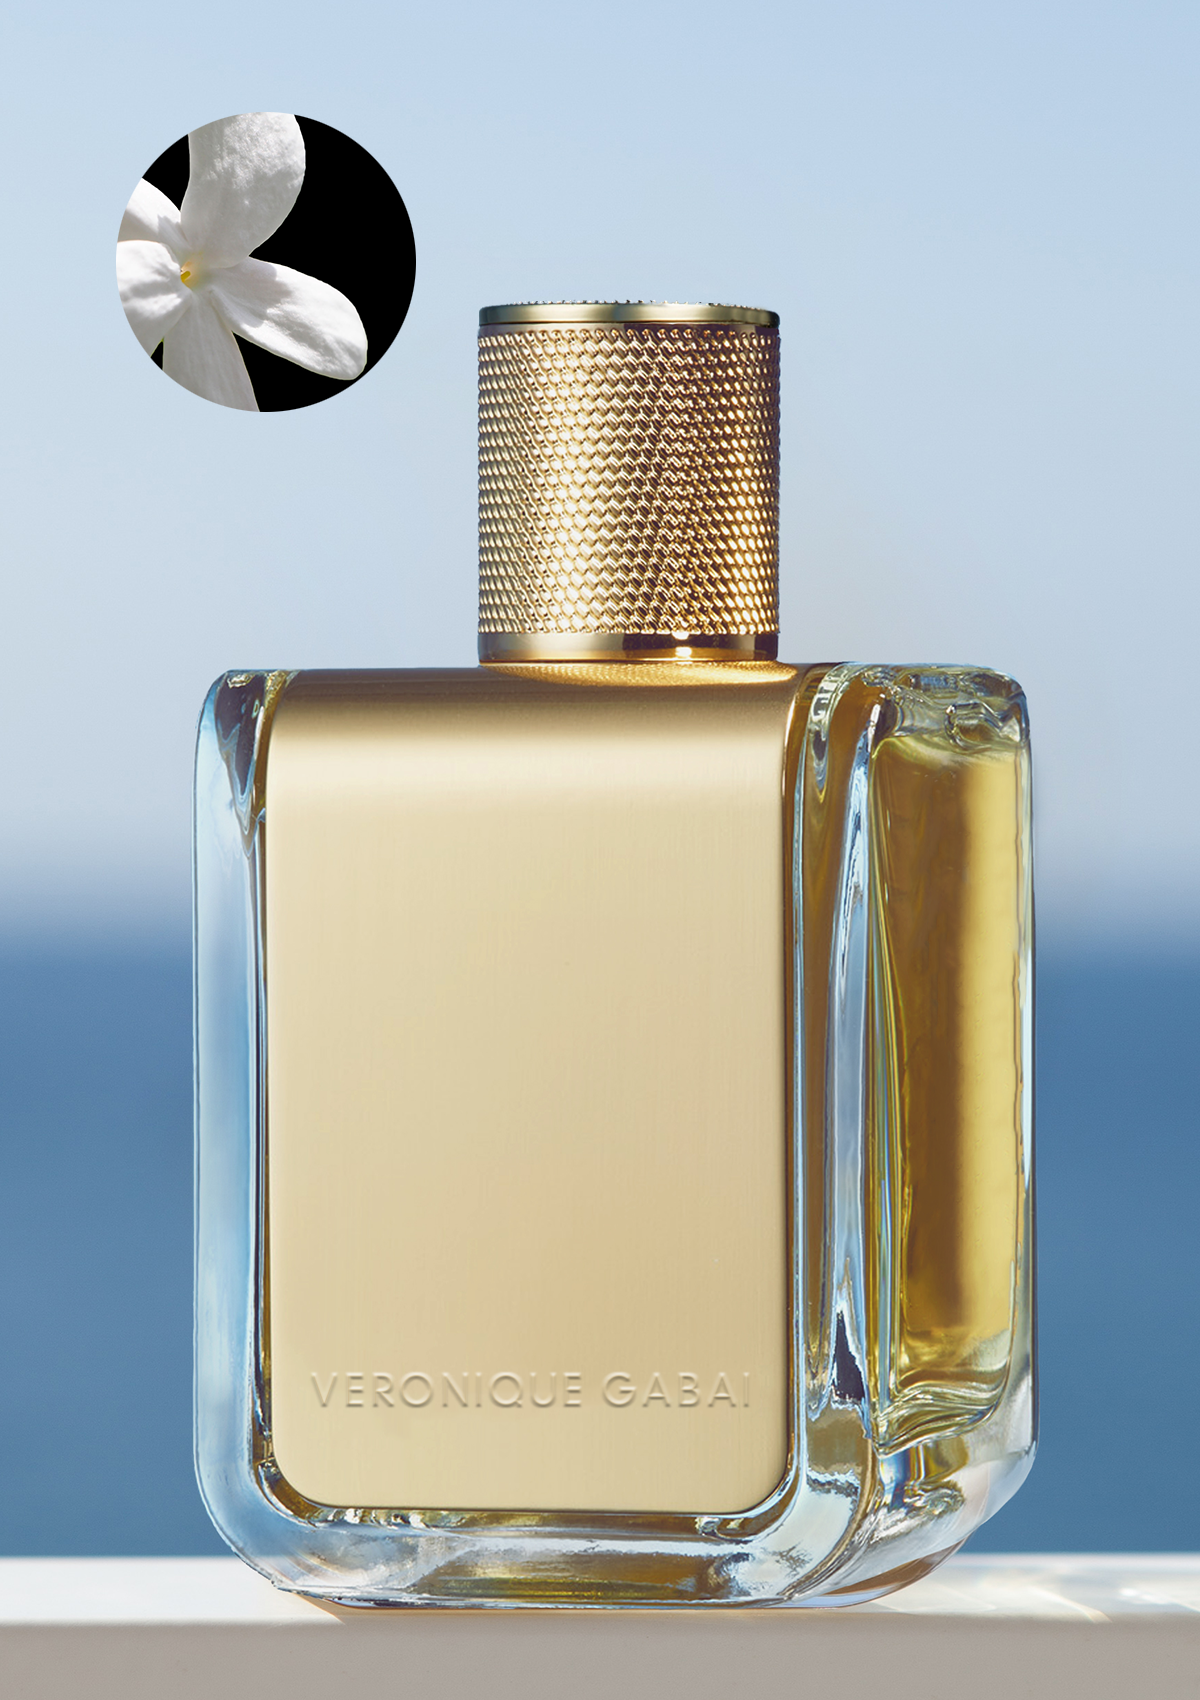 Veronique Gabai Jasmin De Minuit Eau de Parfum with Travel Case 10ml